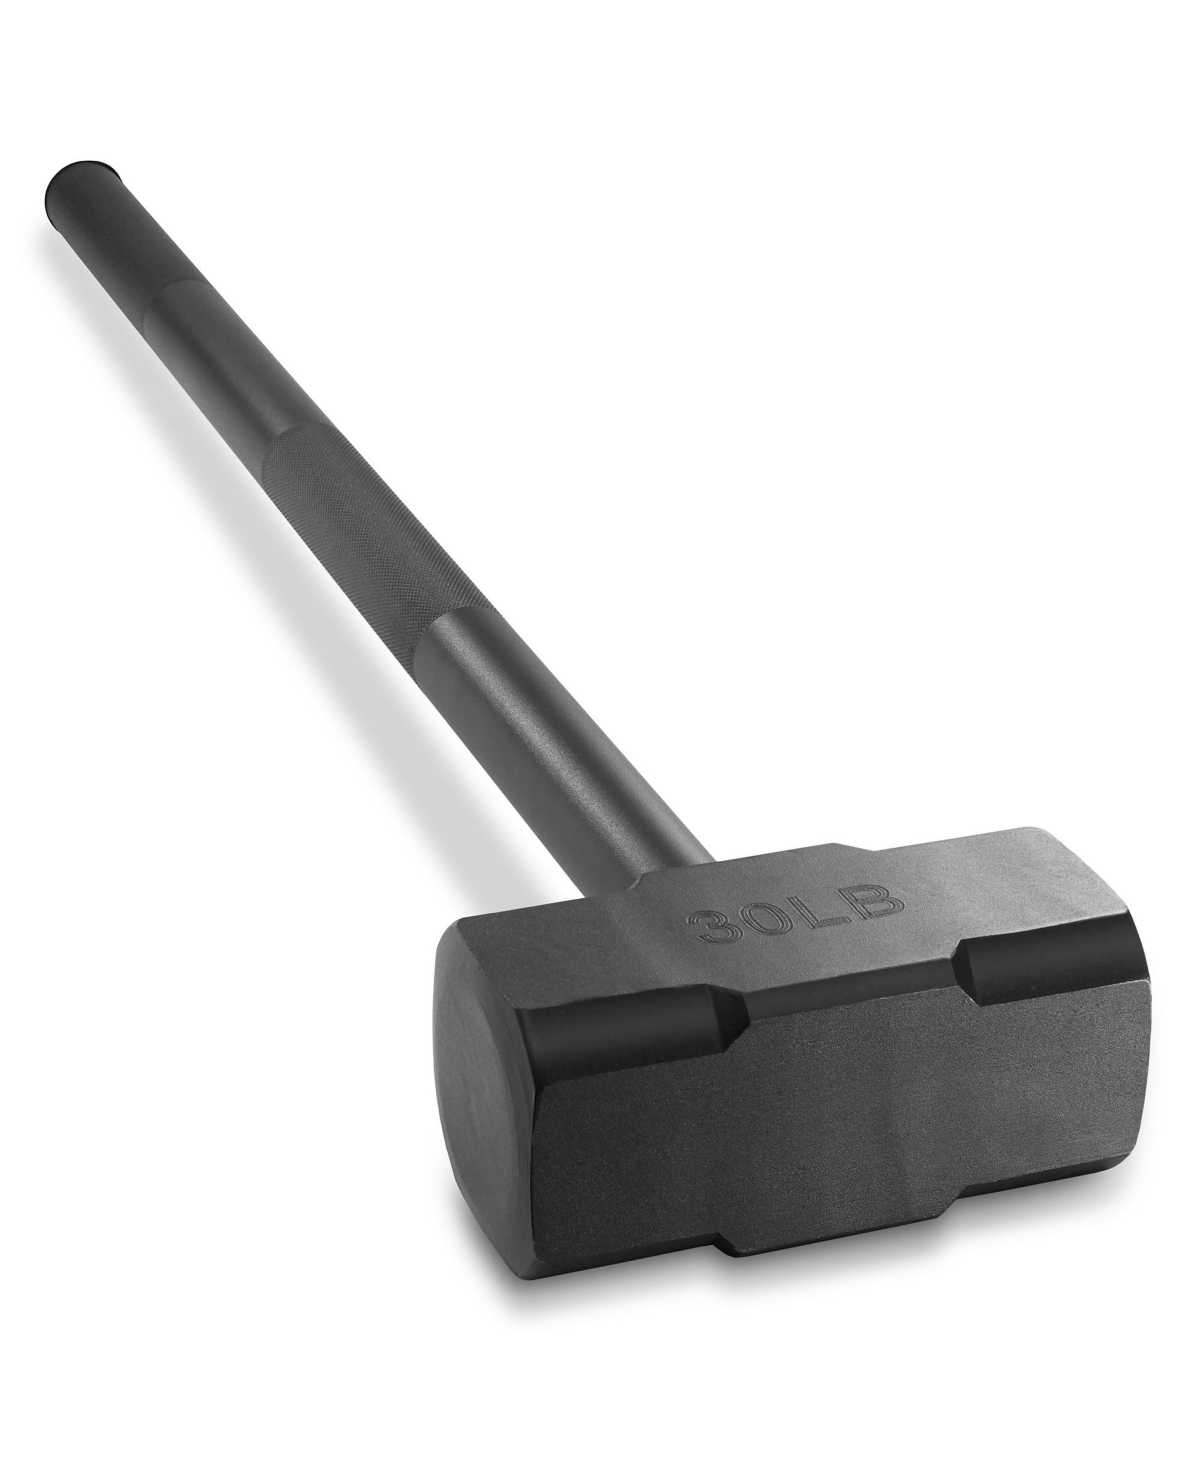 Fitness Hammer, 30 Lb - Steel Hammer for Strength Training - Black